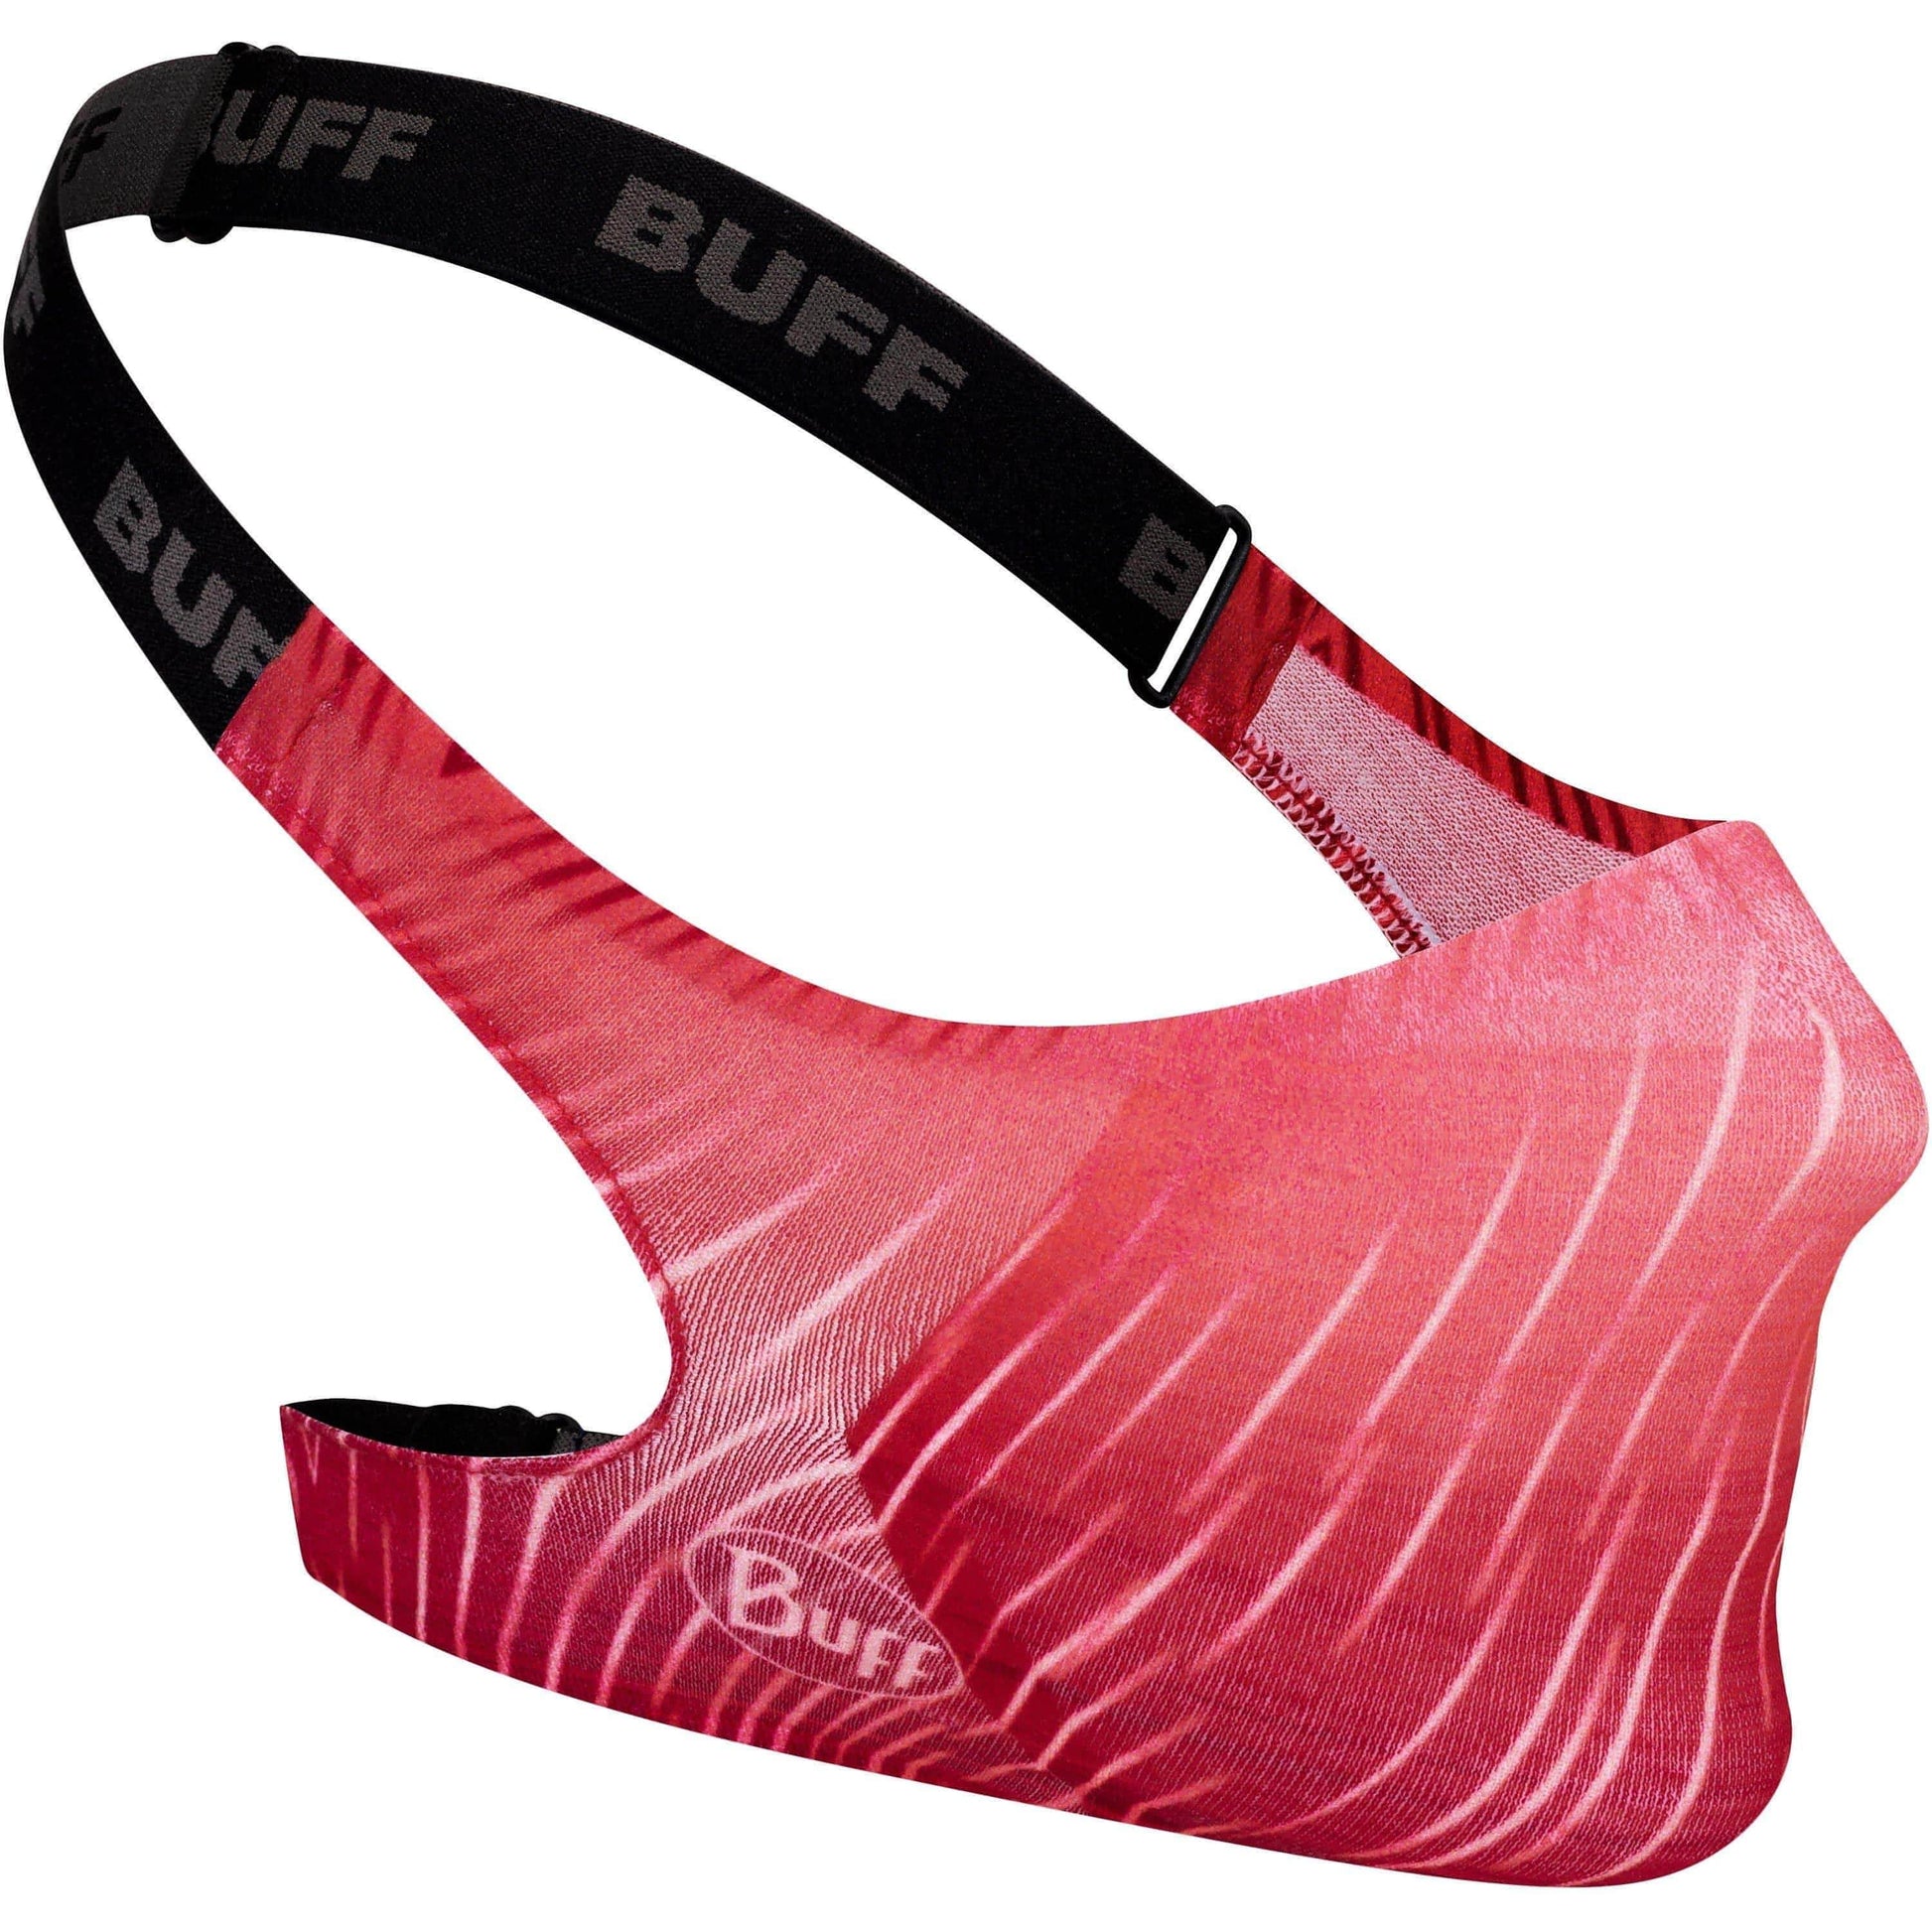 Buff Keren Flash Pink Filter Face Mask 8428927442321 - Start Fitness